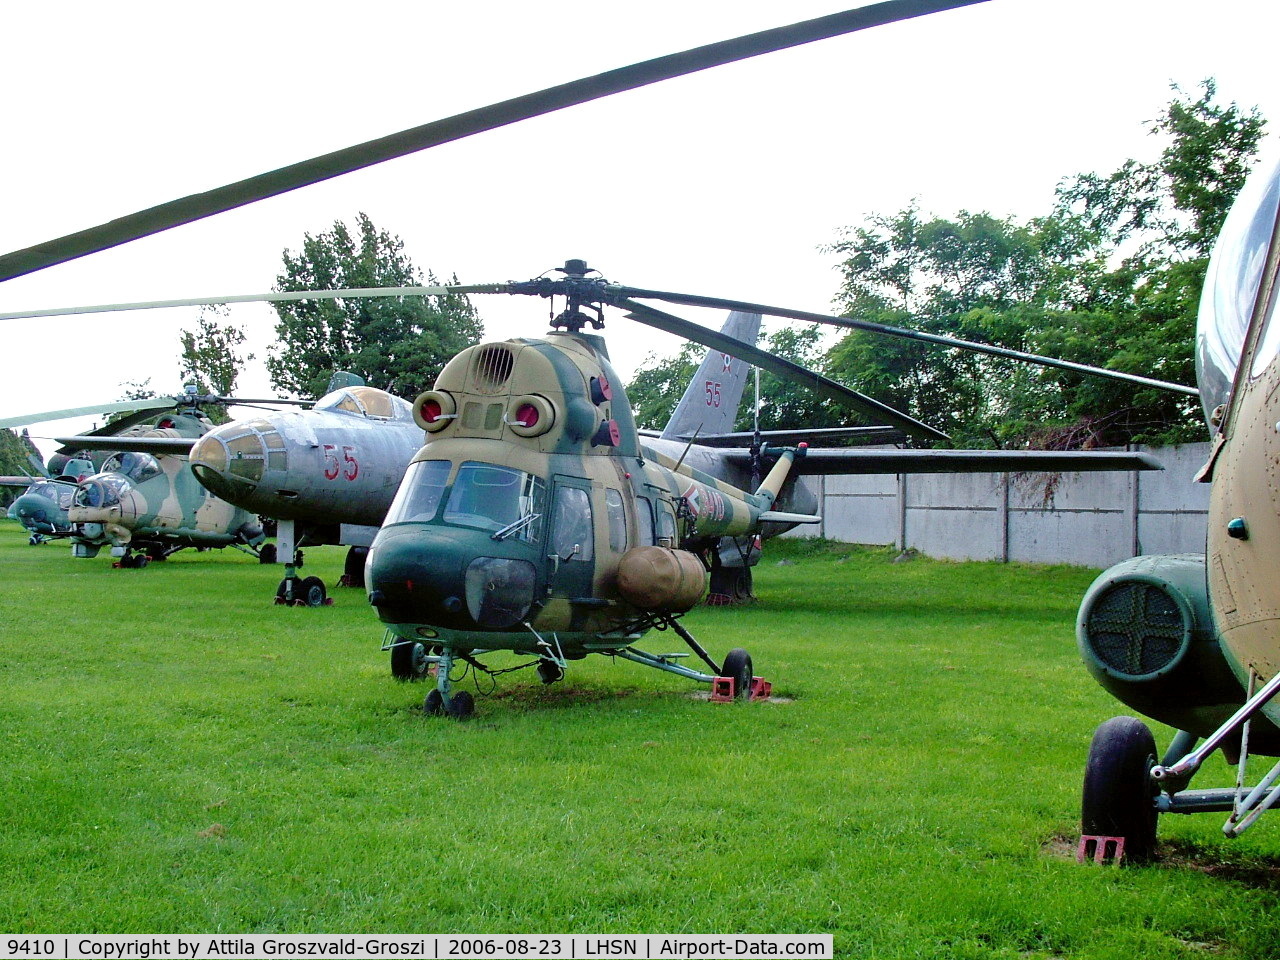 9410, 1985 Mil (PZL-Swidnik) Mi-2 C/N 519410095, LHSN - Szolnok Air Base Musum, Hungary